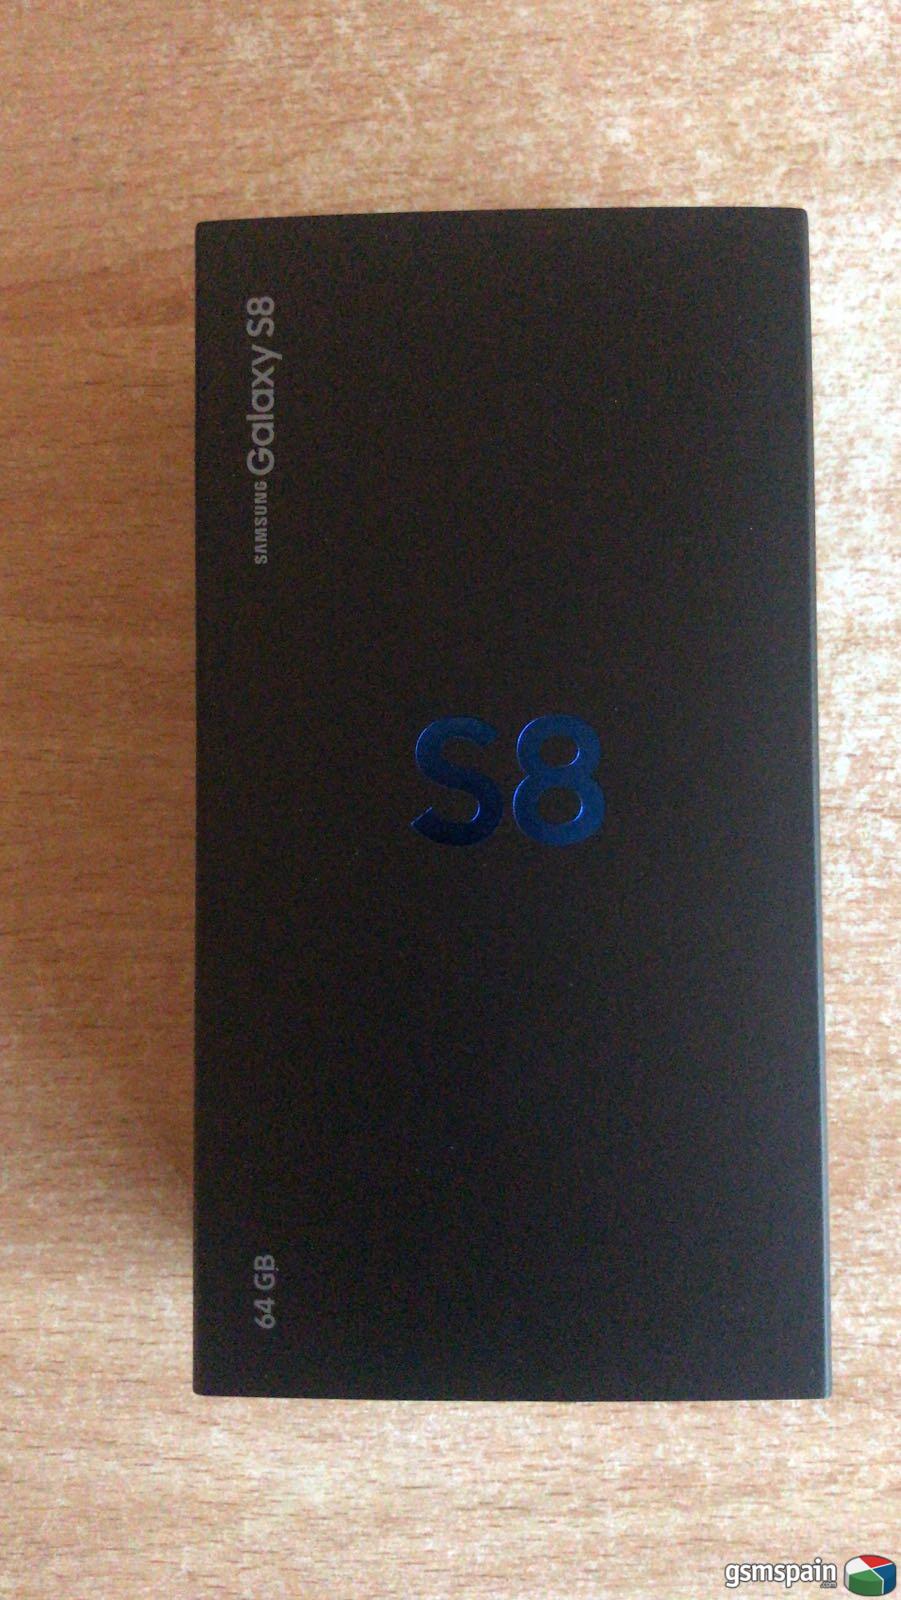 [VENDO]  2 Samsung Galaxy s8 64 Gb, 1 Midnight Black y 1 Orchid Grey,precintado 490 unidad